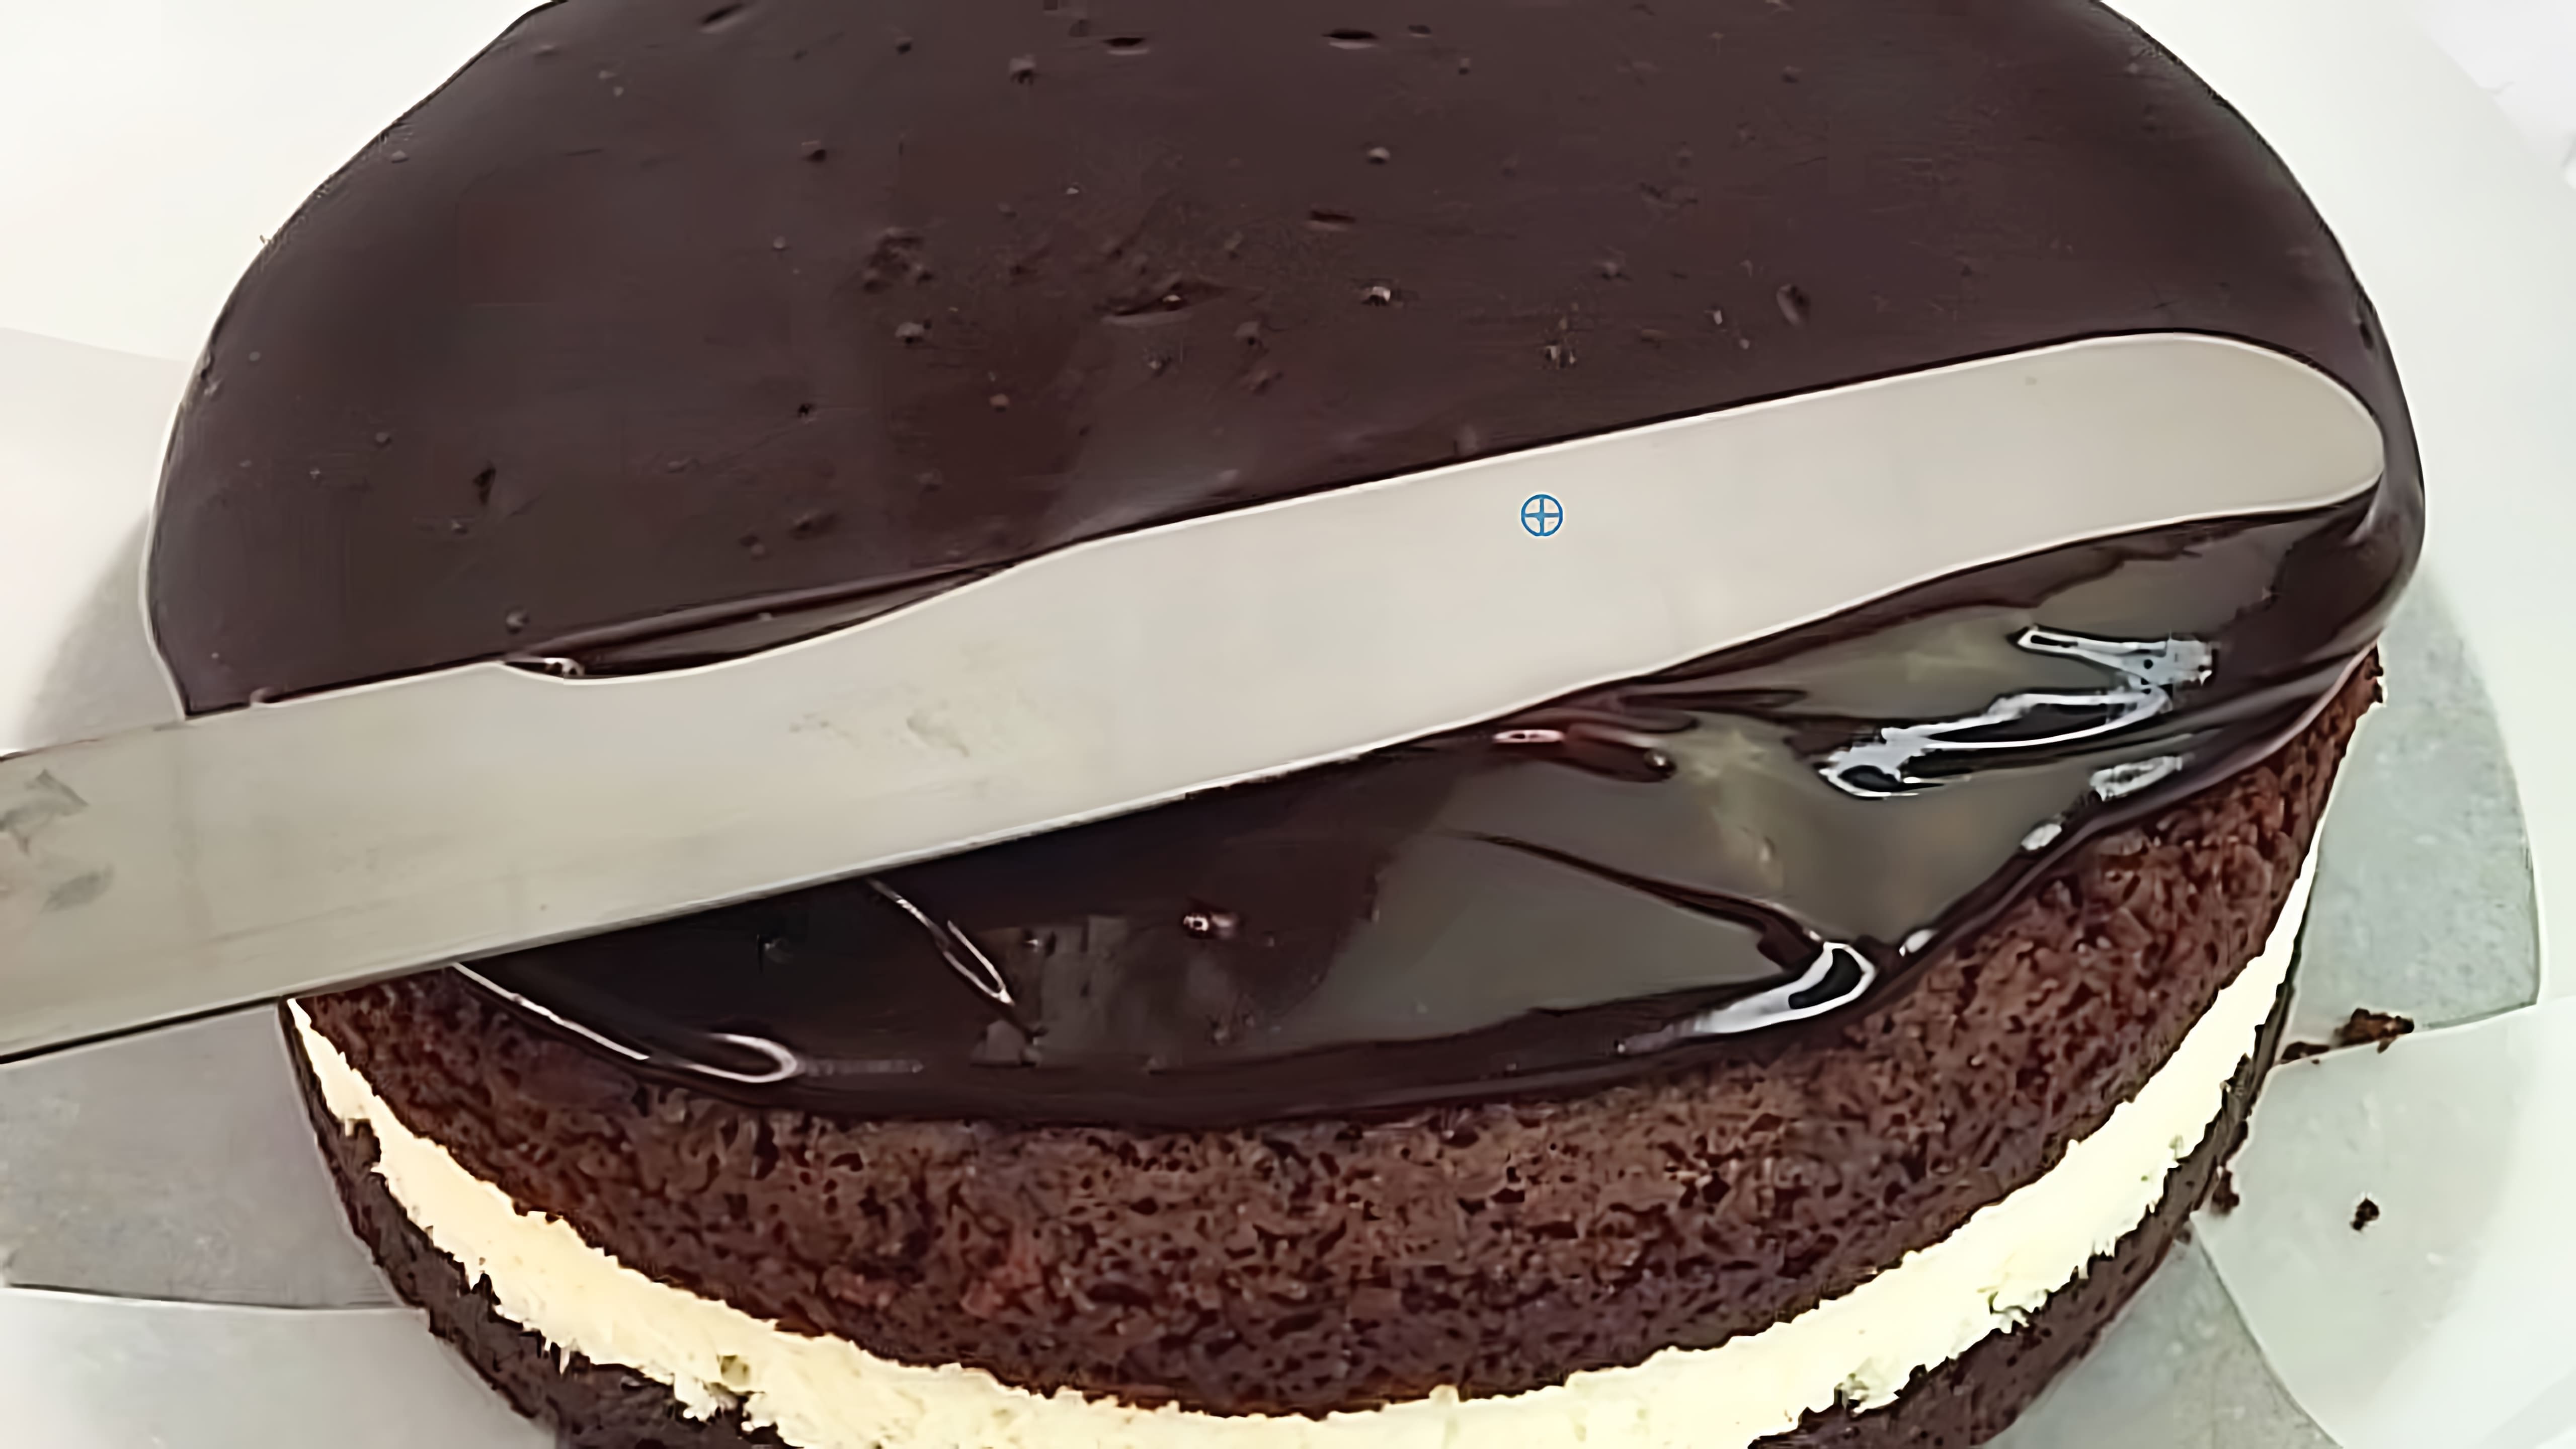 Видео как быстро и легко приготовить очень бюджетную шоколадную глазурь для тортов, пирогов и других выпечных изделий